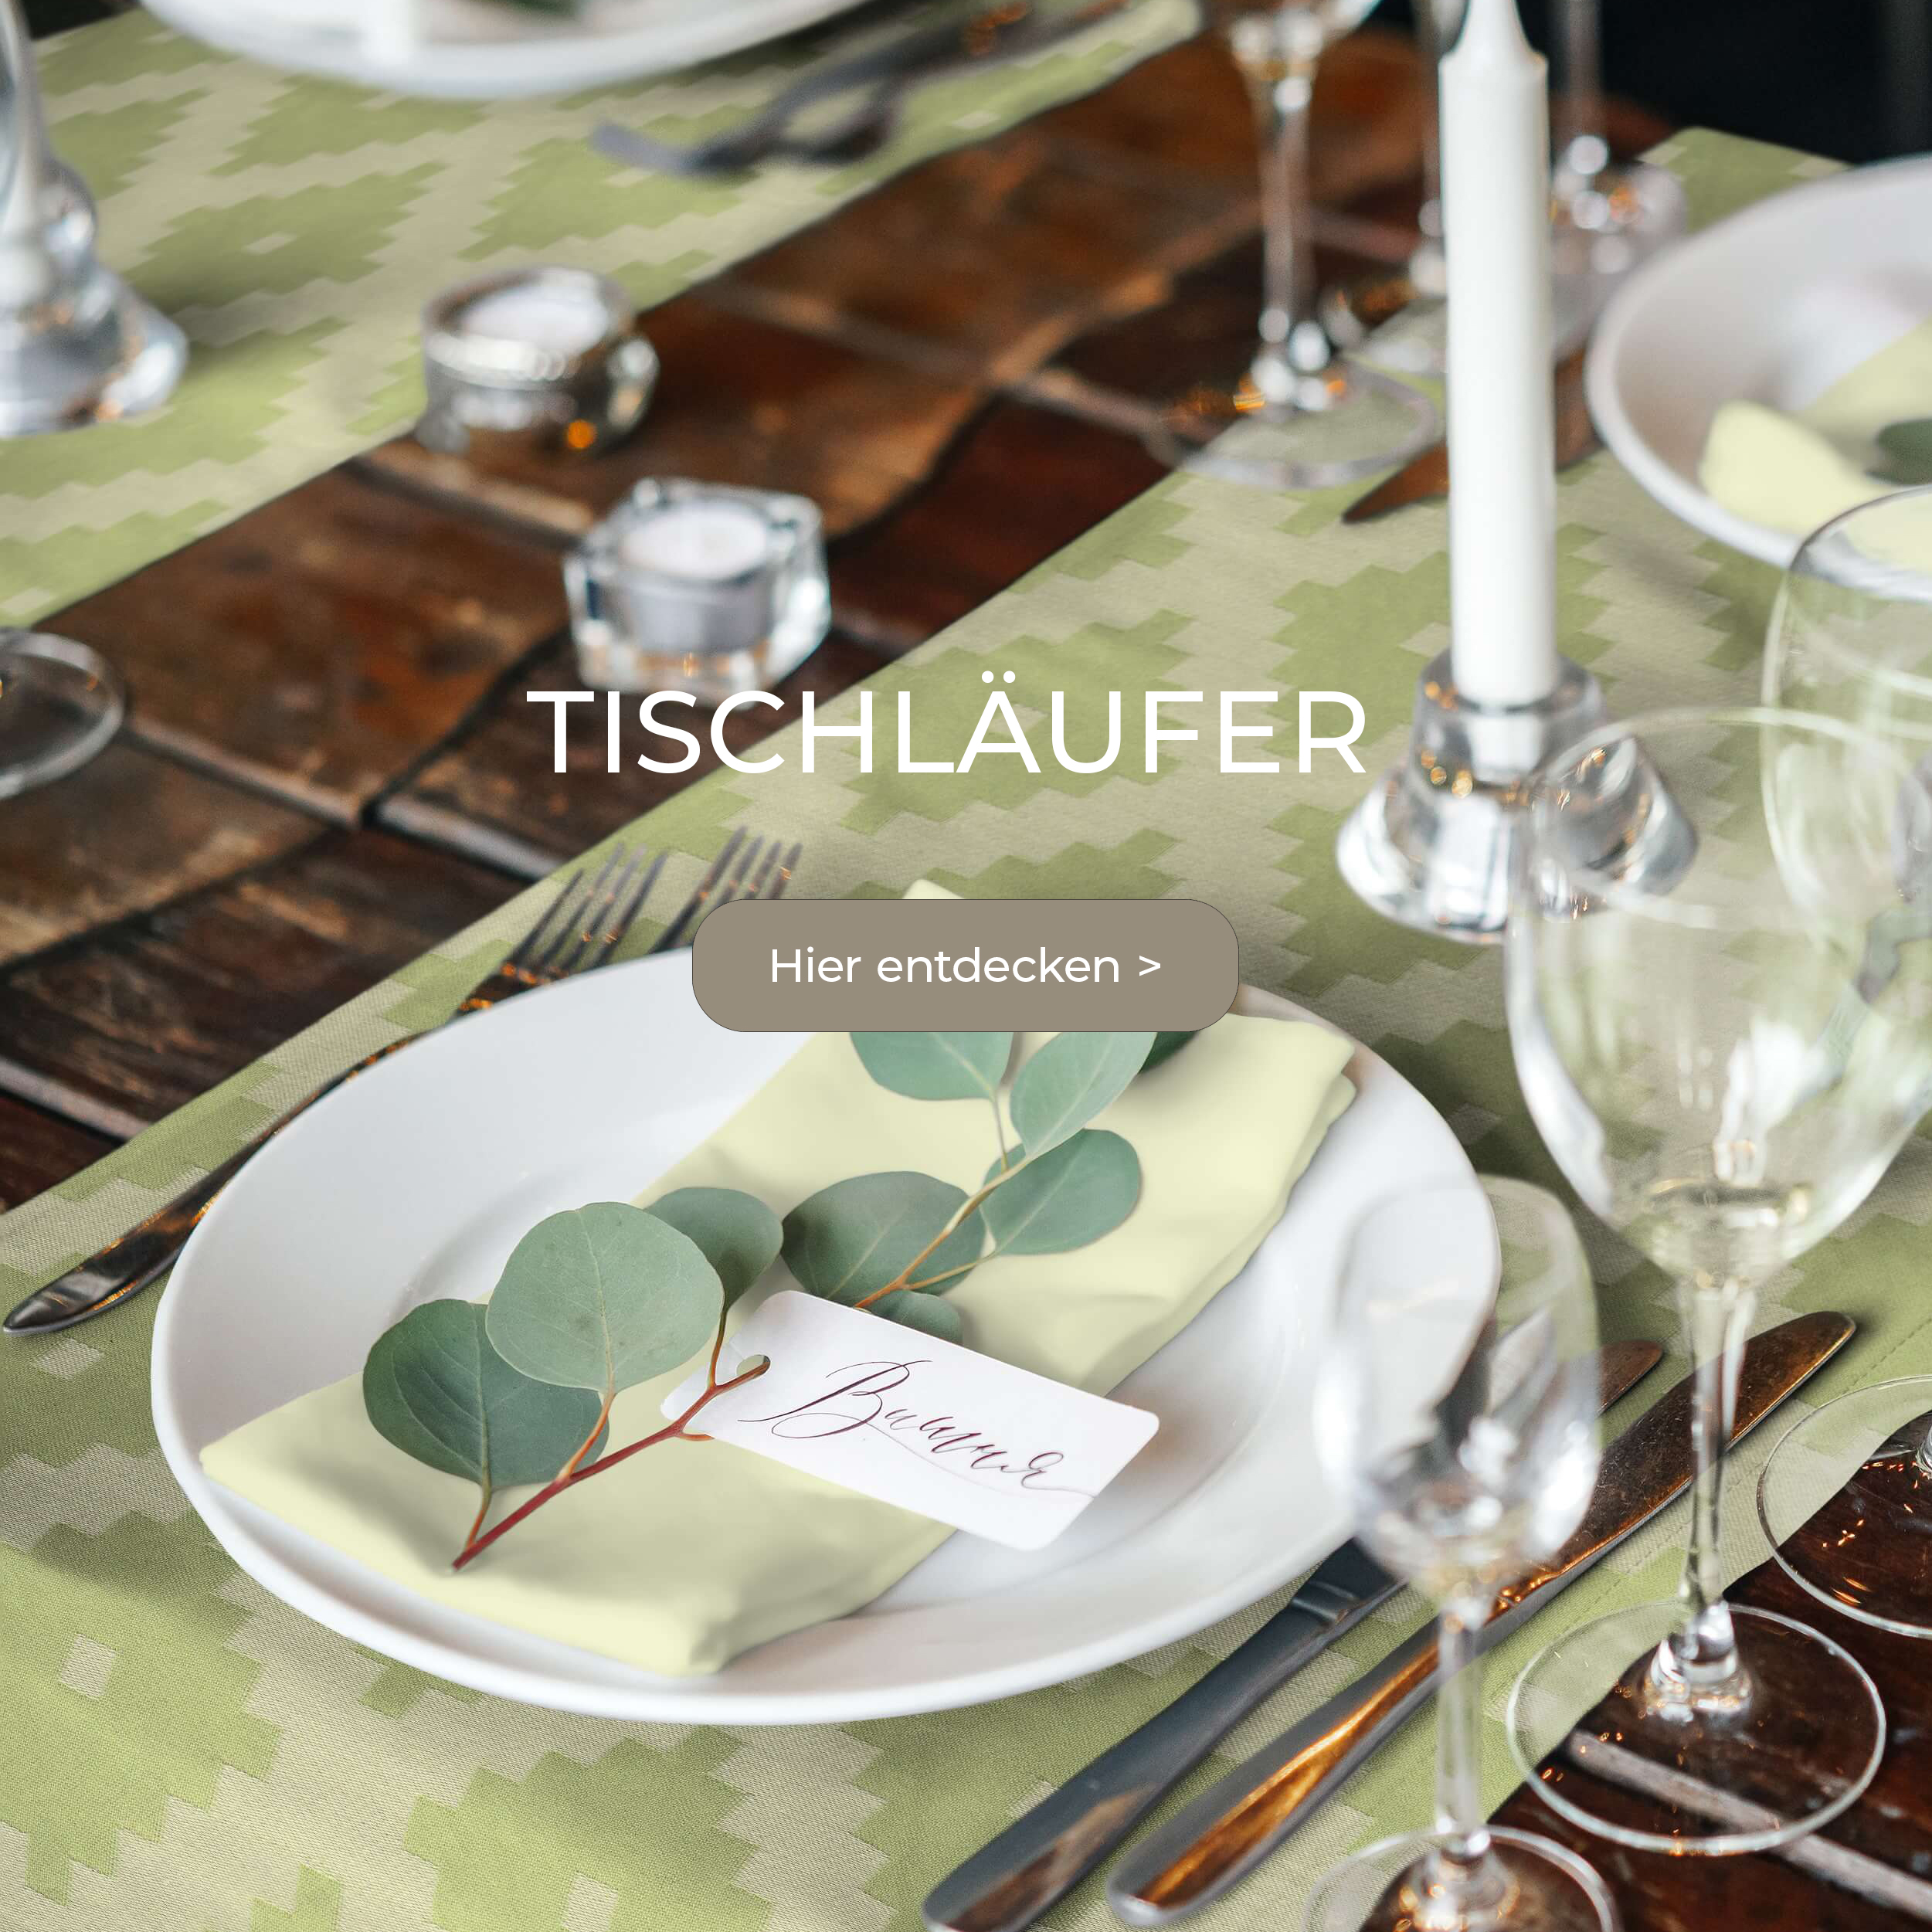 Tischläufer aus Bio-Baumwolle: Perfekter Stoffservietten Kombipartner und zu Tischset